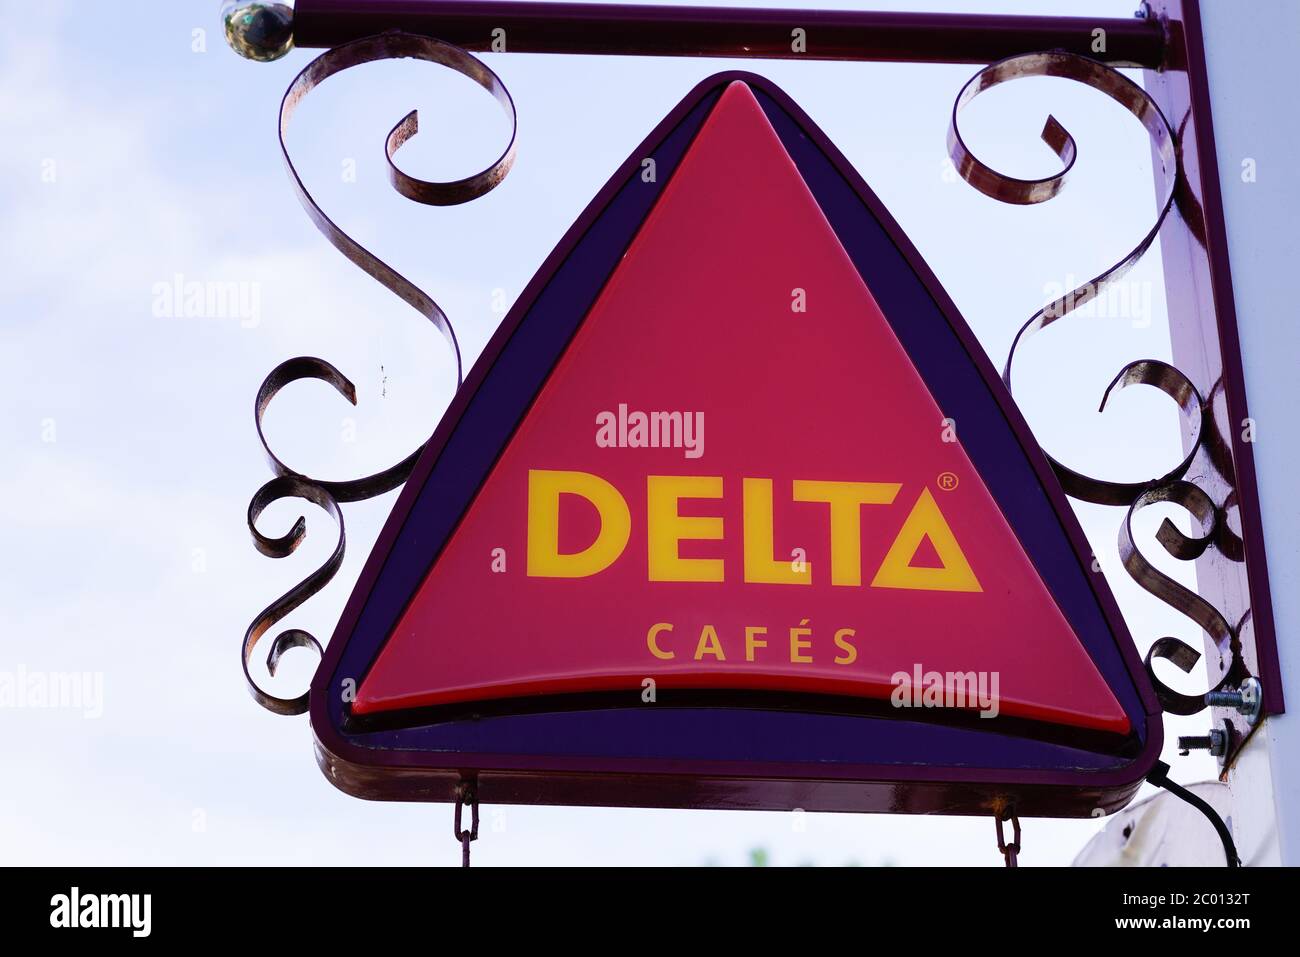 Bordeaux , Aquitaine / France - 06 01 2020 : Delta cafes red sign